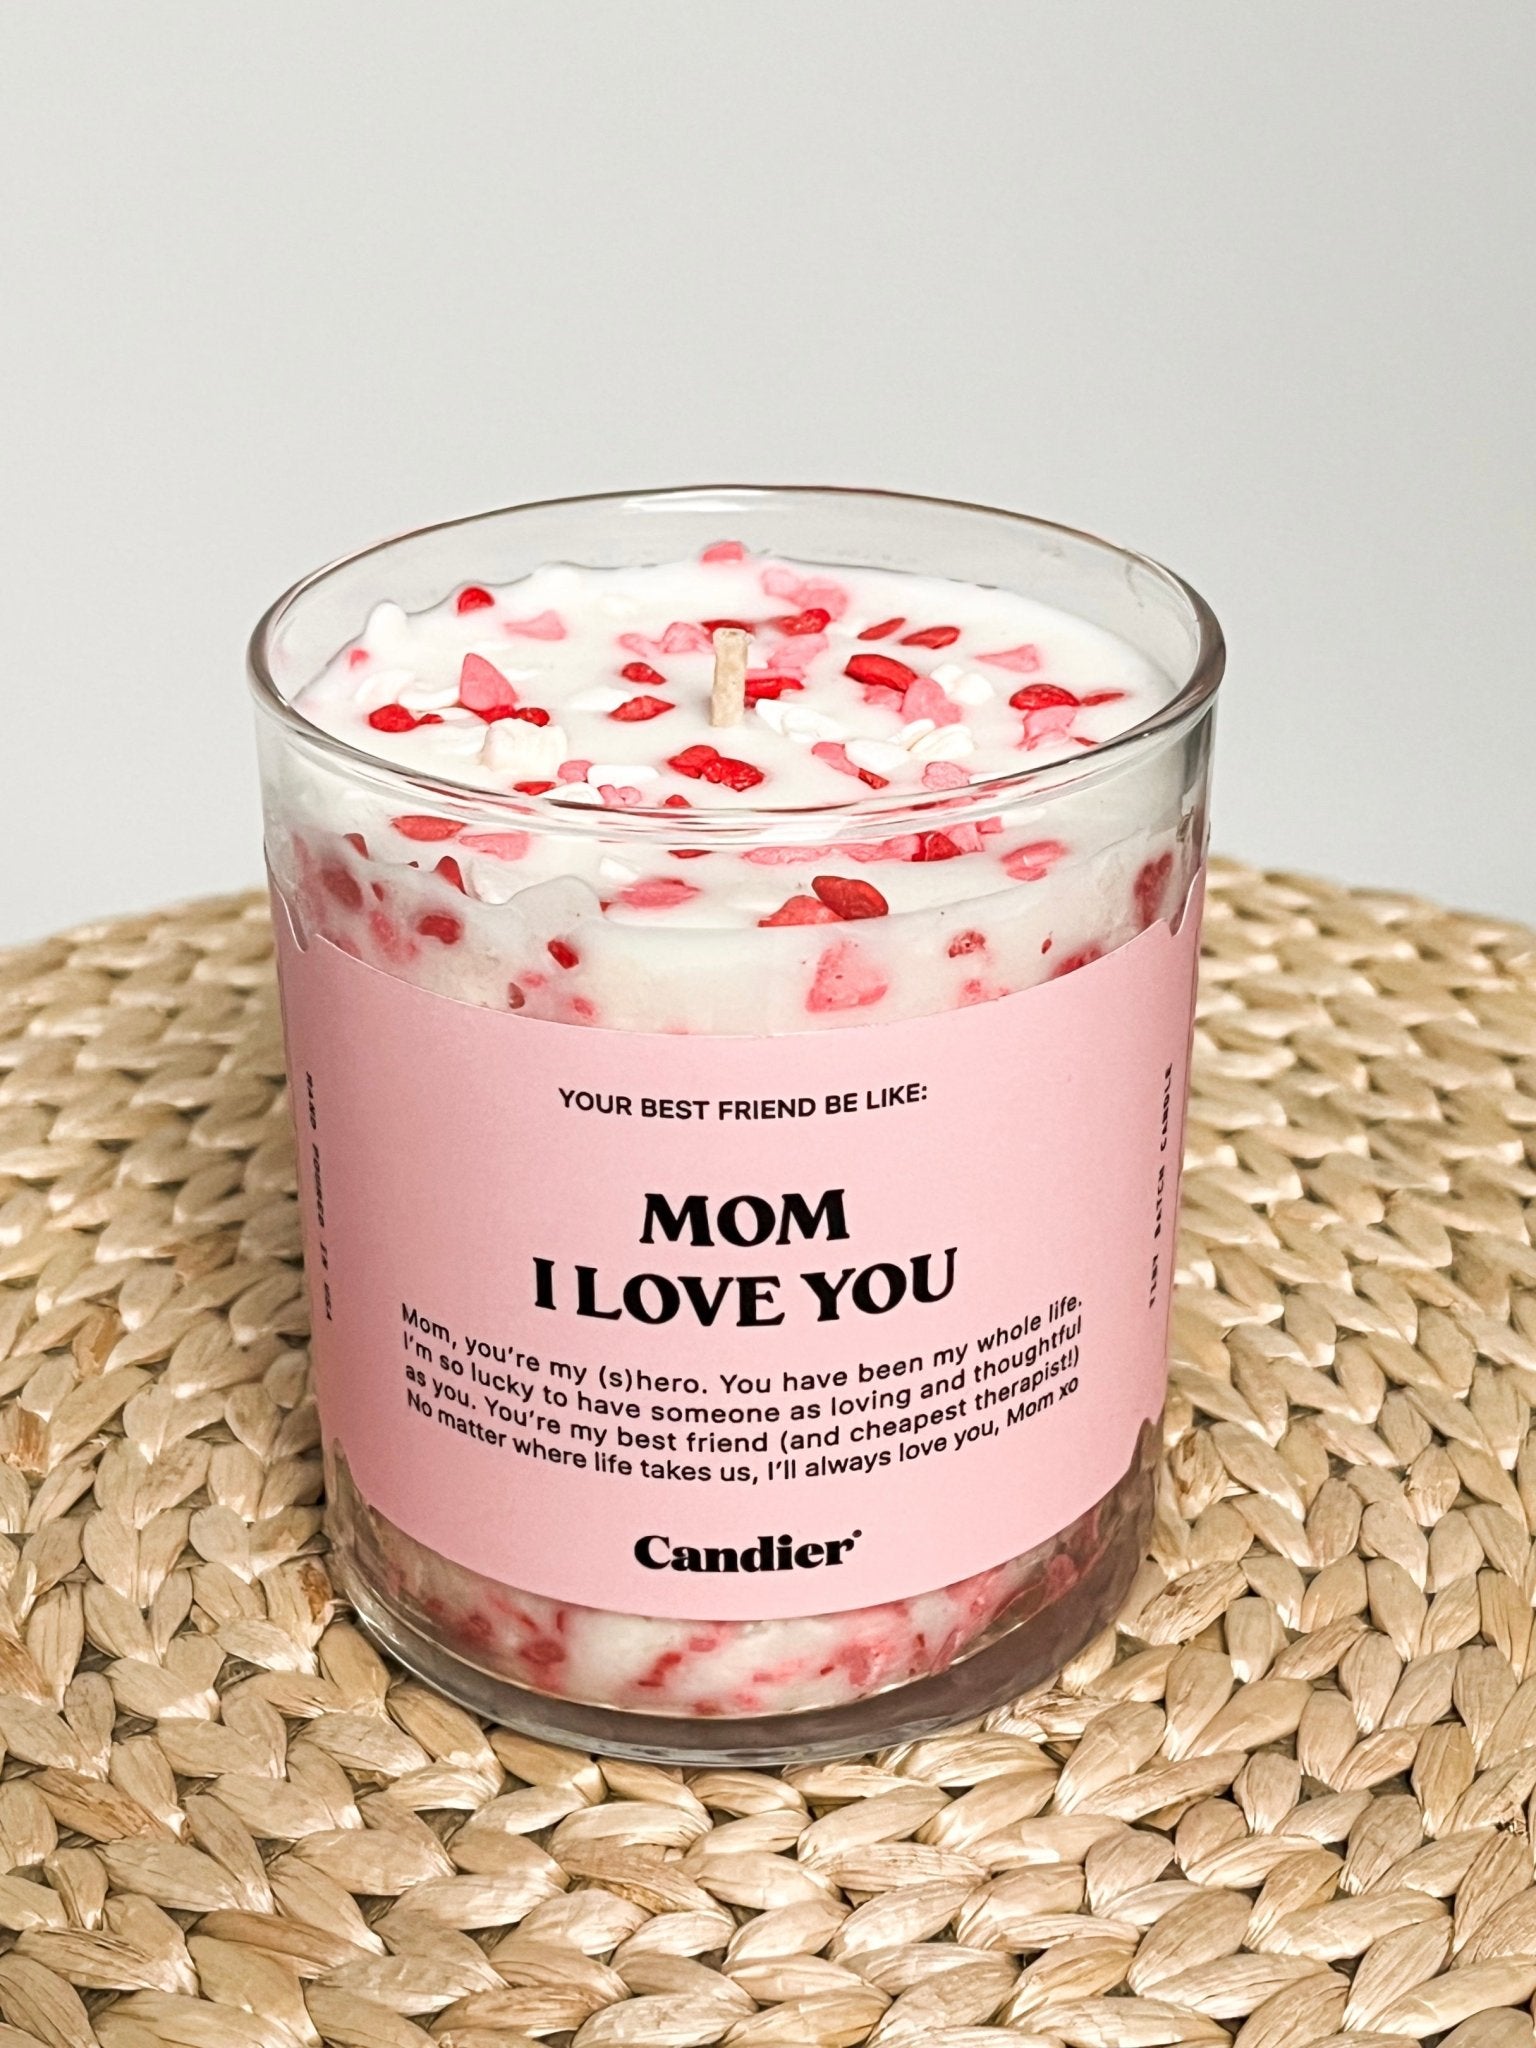 Mom I love you candle 9 oz - Cute candle - Cute Mom Gift Ideas at Lush Fashion Lounge in Oklahoma